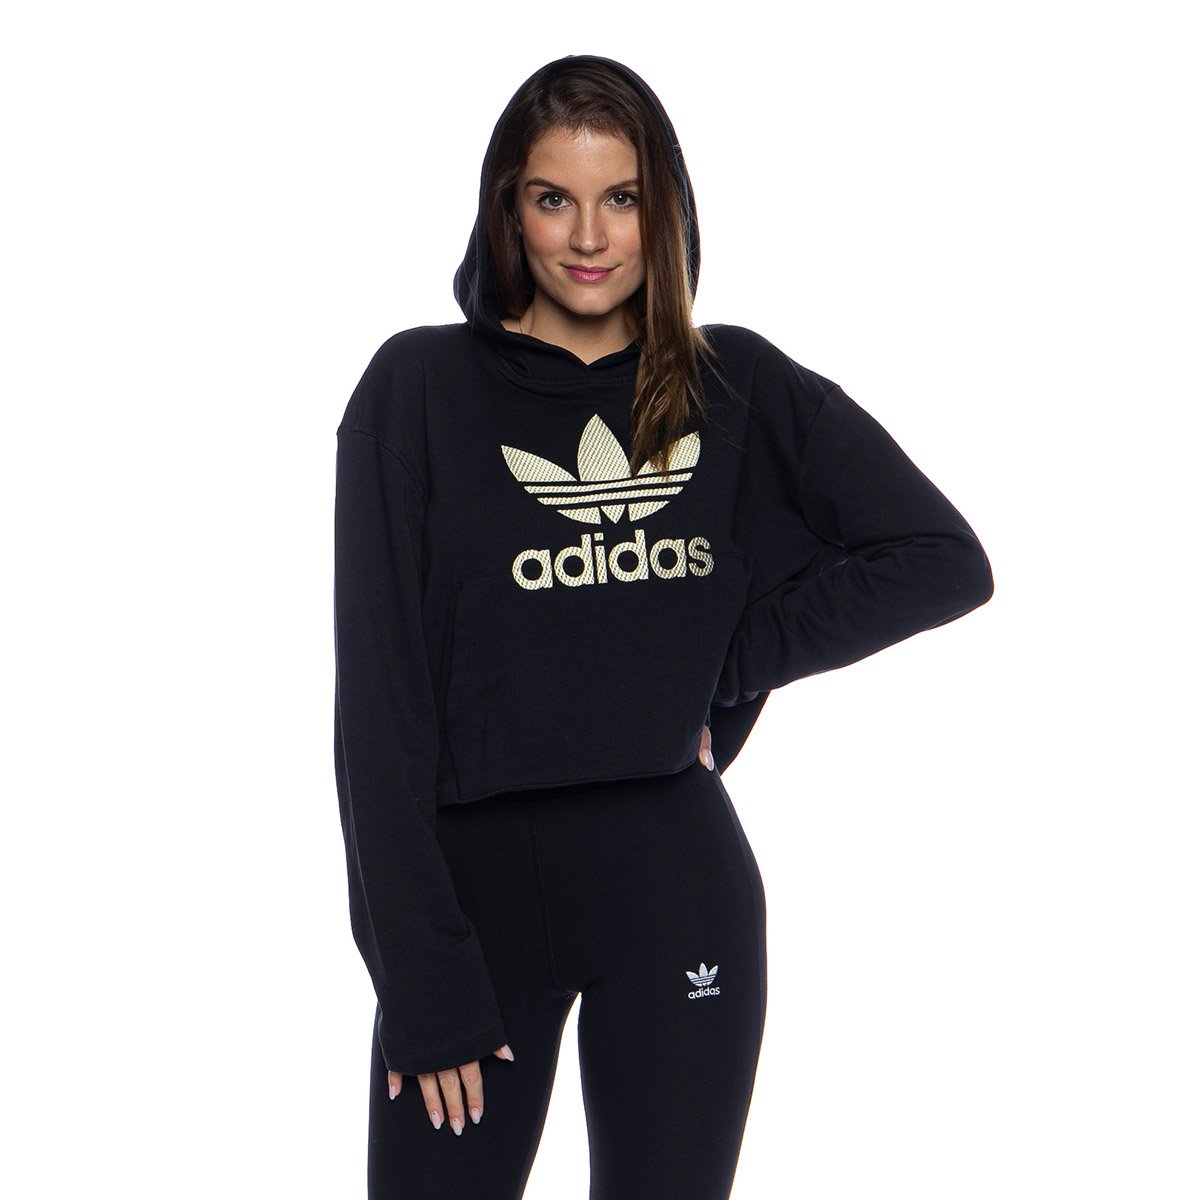 Adidas Originals WMNS Sweatshirt LG Hoodie black | Bludshop.com